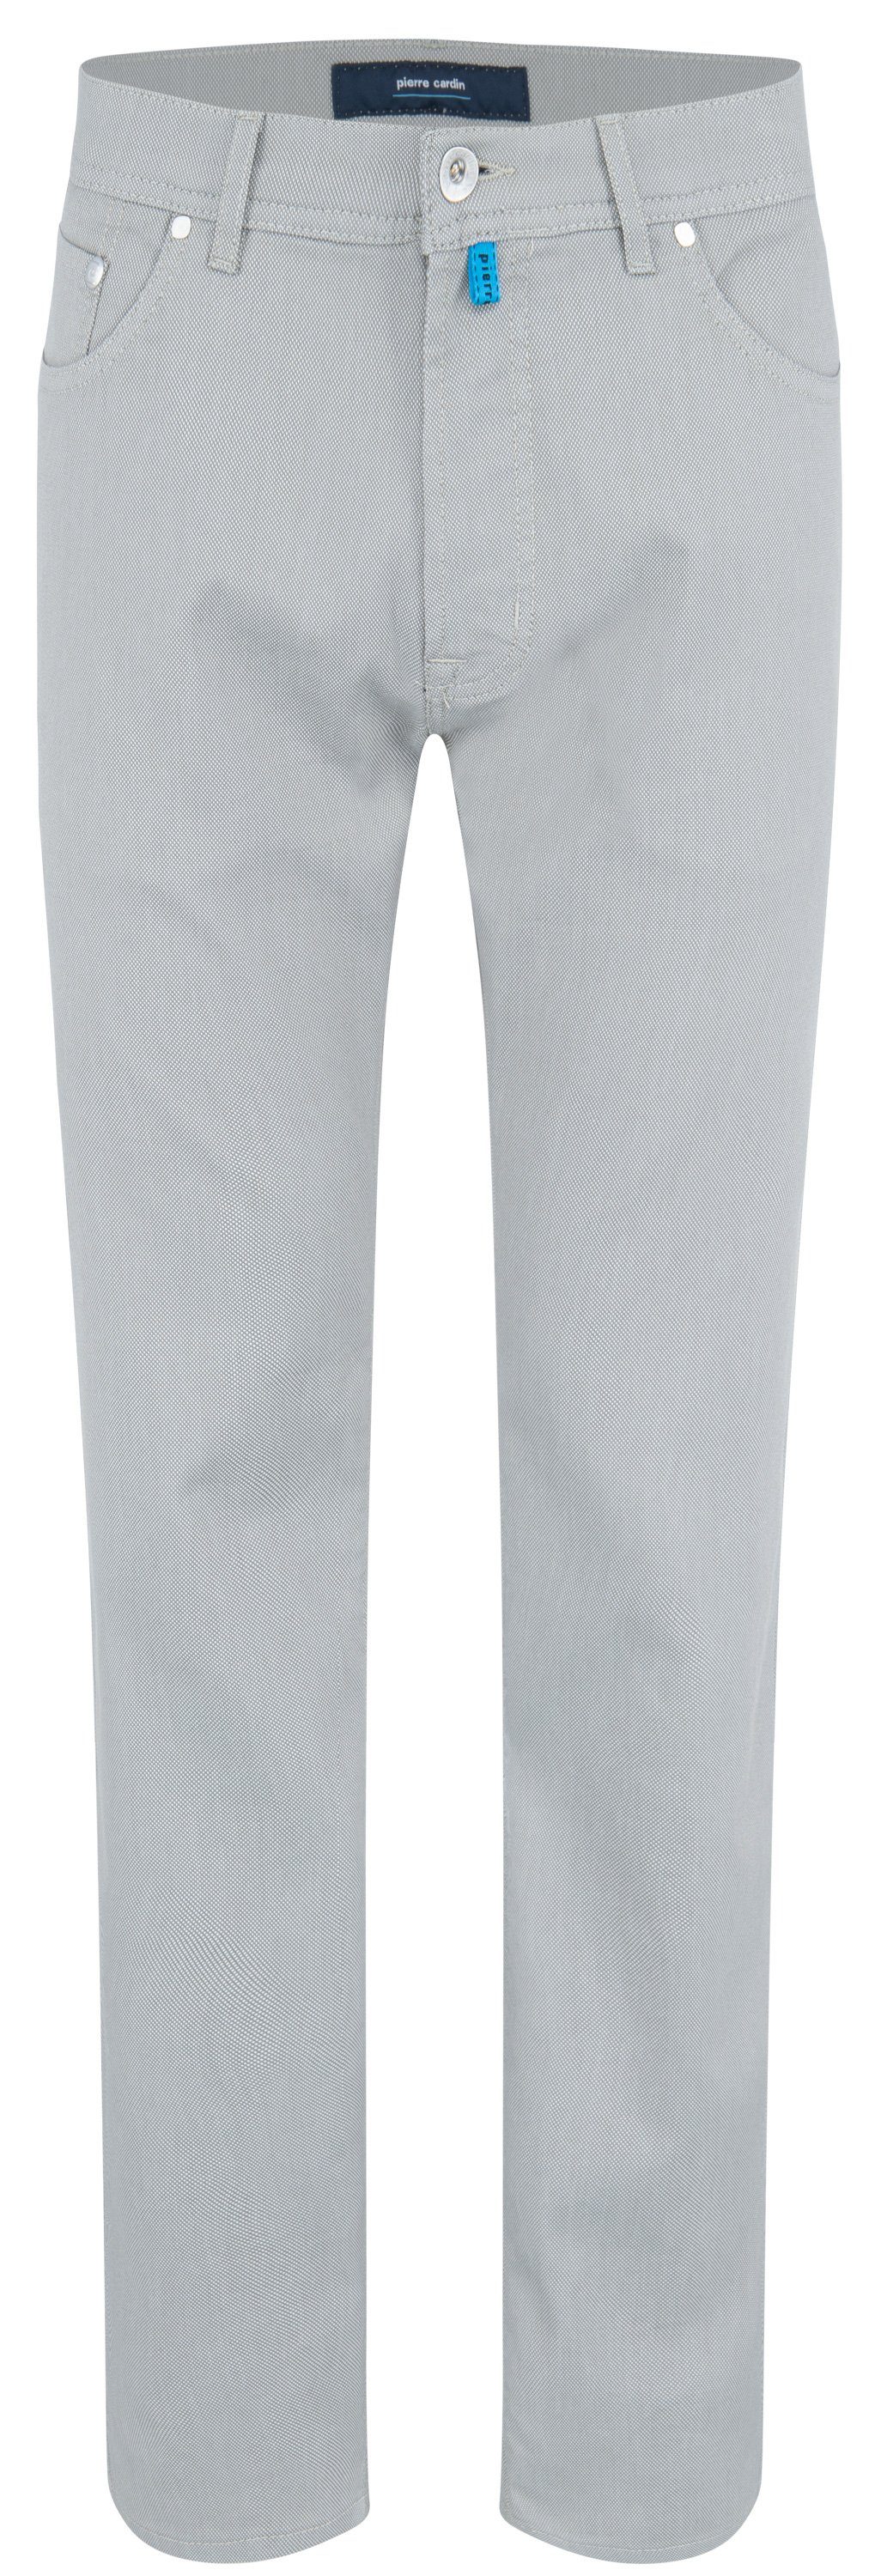 Pierre Cardin 5-Pocket-Jeans PIERRE CARDIN LYON pelican 30940 1017.1110